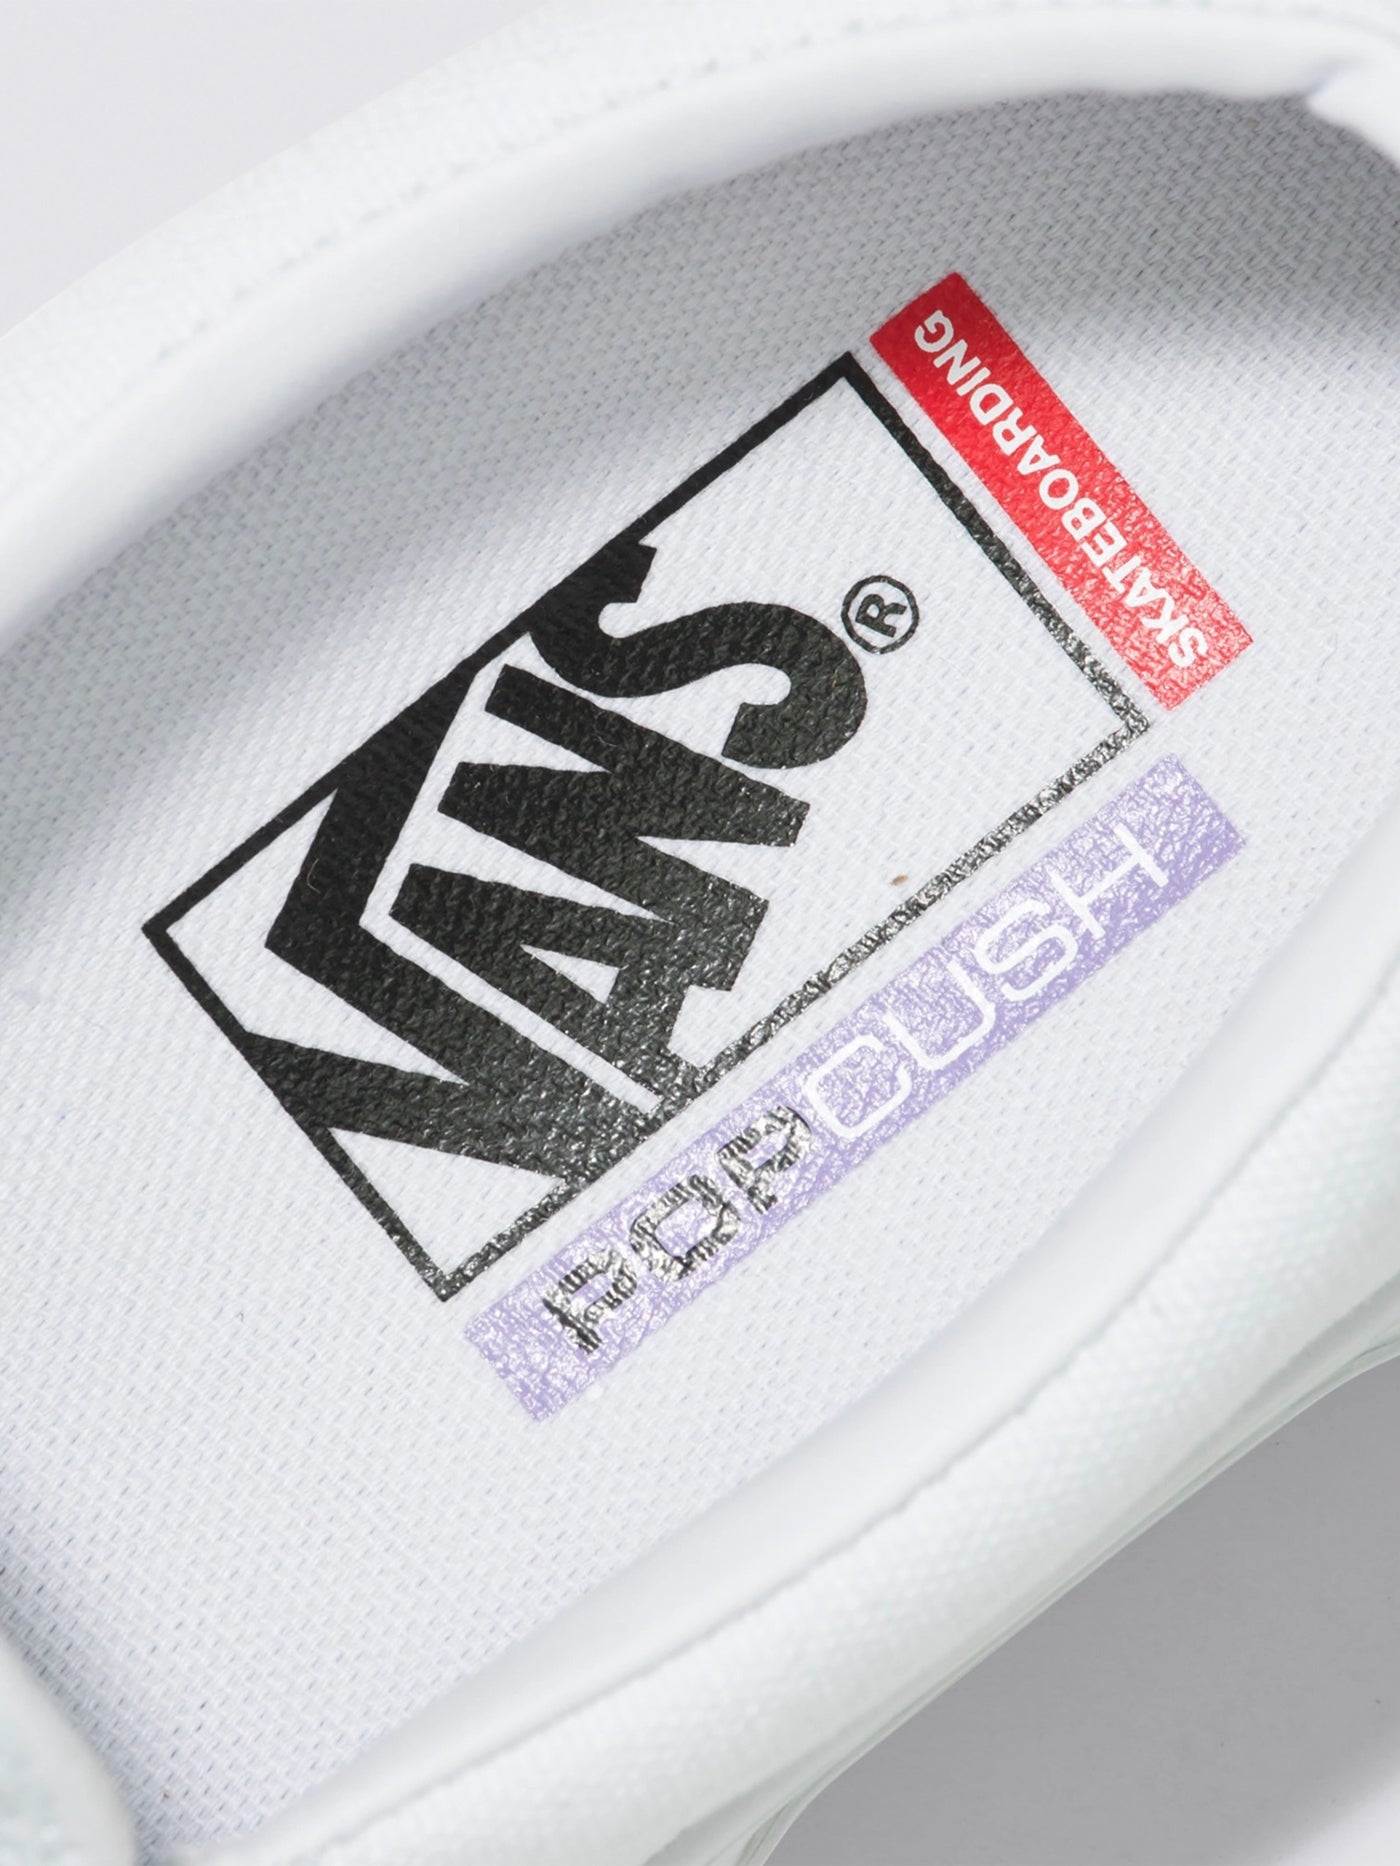 Vans Skate Slip-On True White Shoes